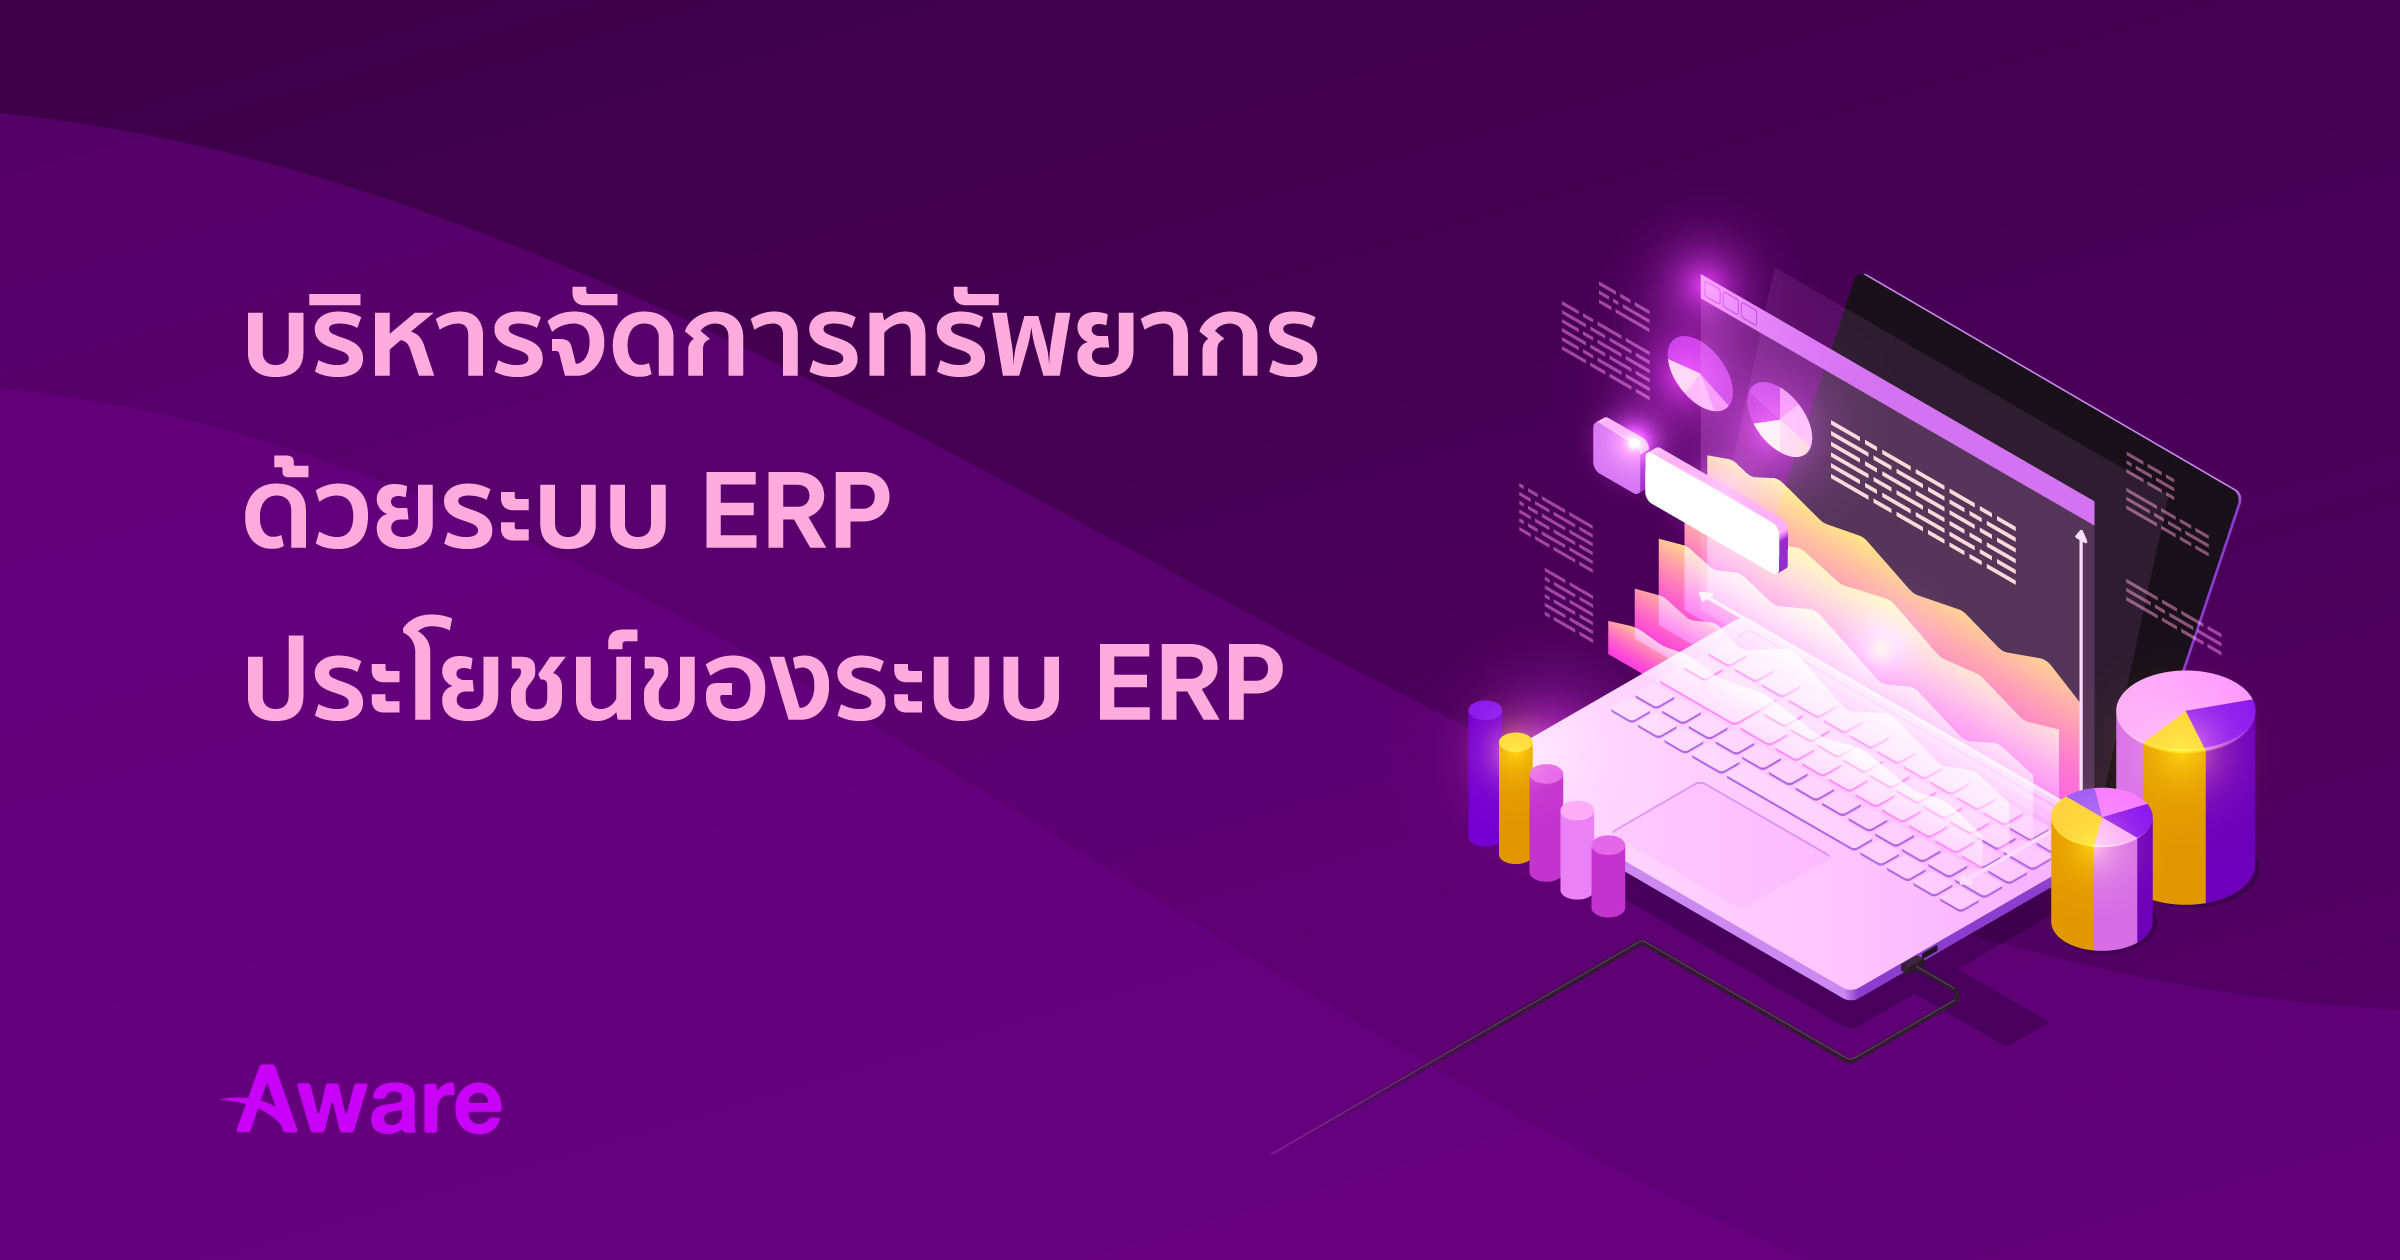 บริหารจัดการทรัพยากรด้วยระบบ ERP | ประโยชน์ของระบบ ERP